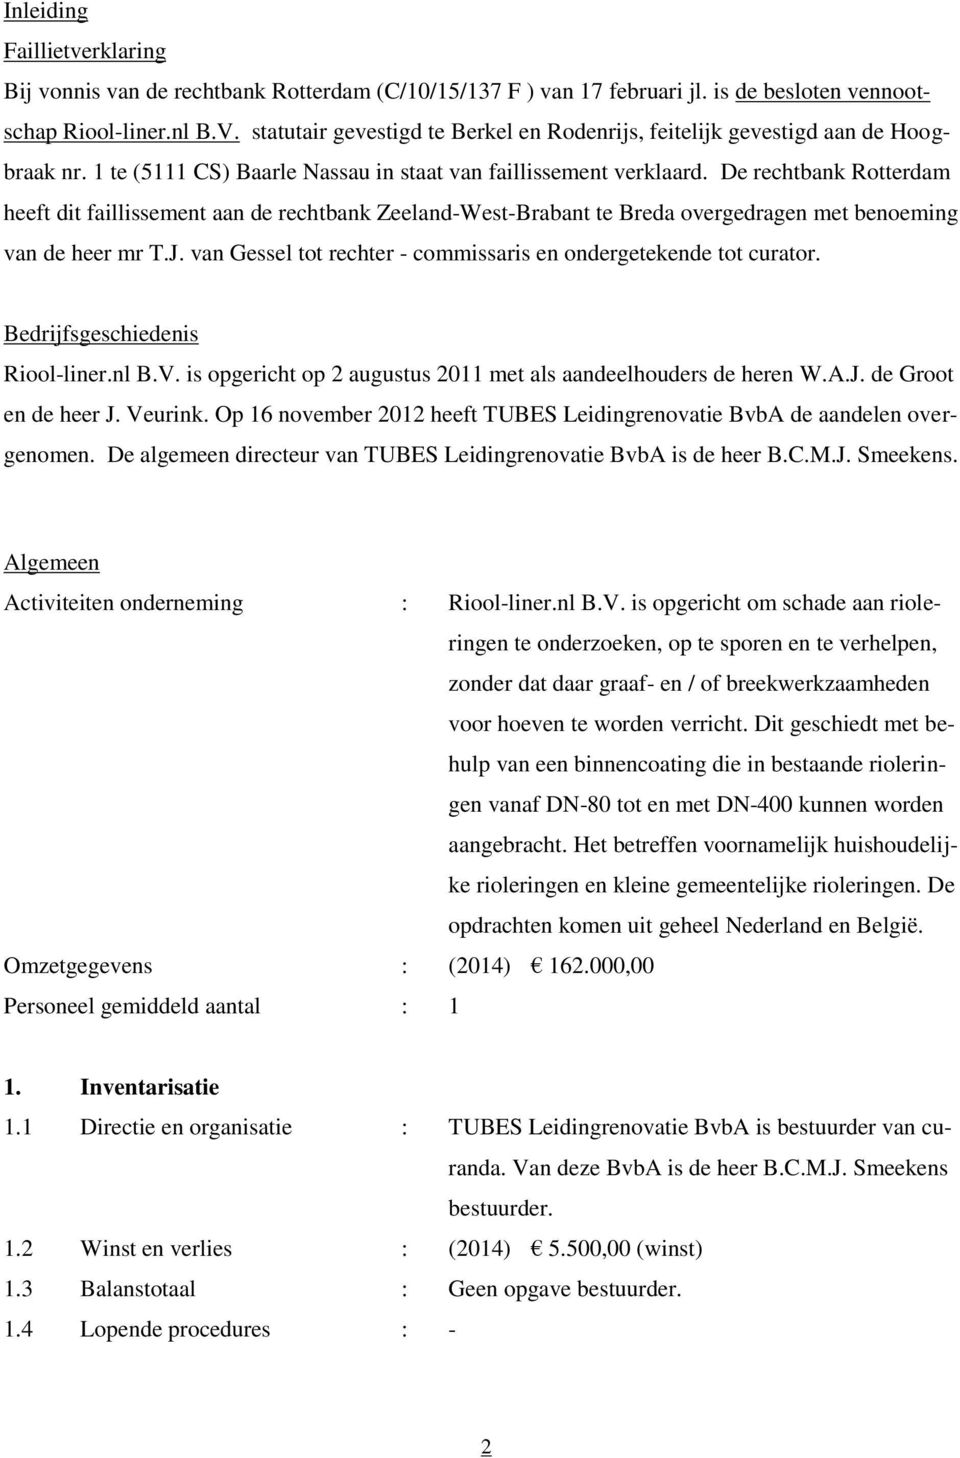 De rechtbank Rotterdam heeft dit faillissement aan de rechtbank Zeeland-West-Brabant te Breda overgedragen met benoeming van de heer mr T.J.